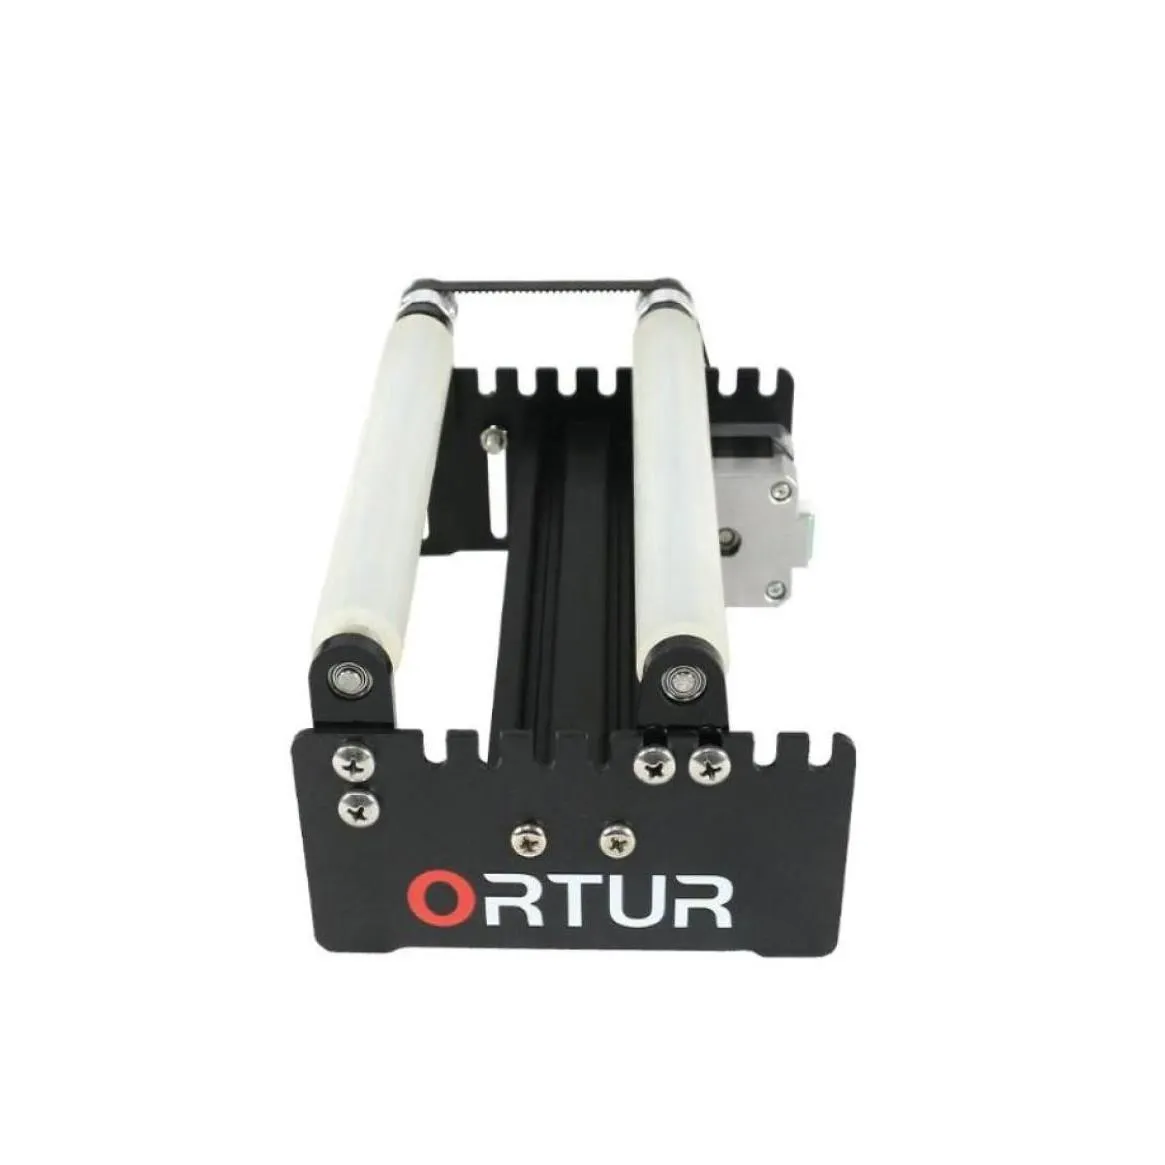 Stampanti 2021 Vendita stampante 3D Ortur Incisore laser Yaxis Modalità di incisione a rulli rotanti per oggetti cilindrici Cans3318560 Drop Deli Otdvq